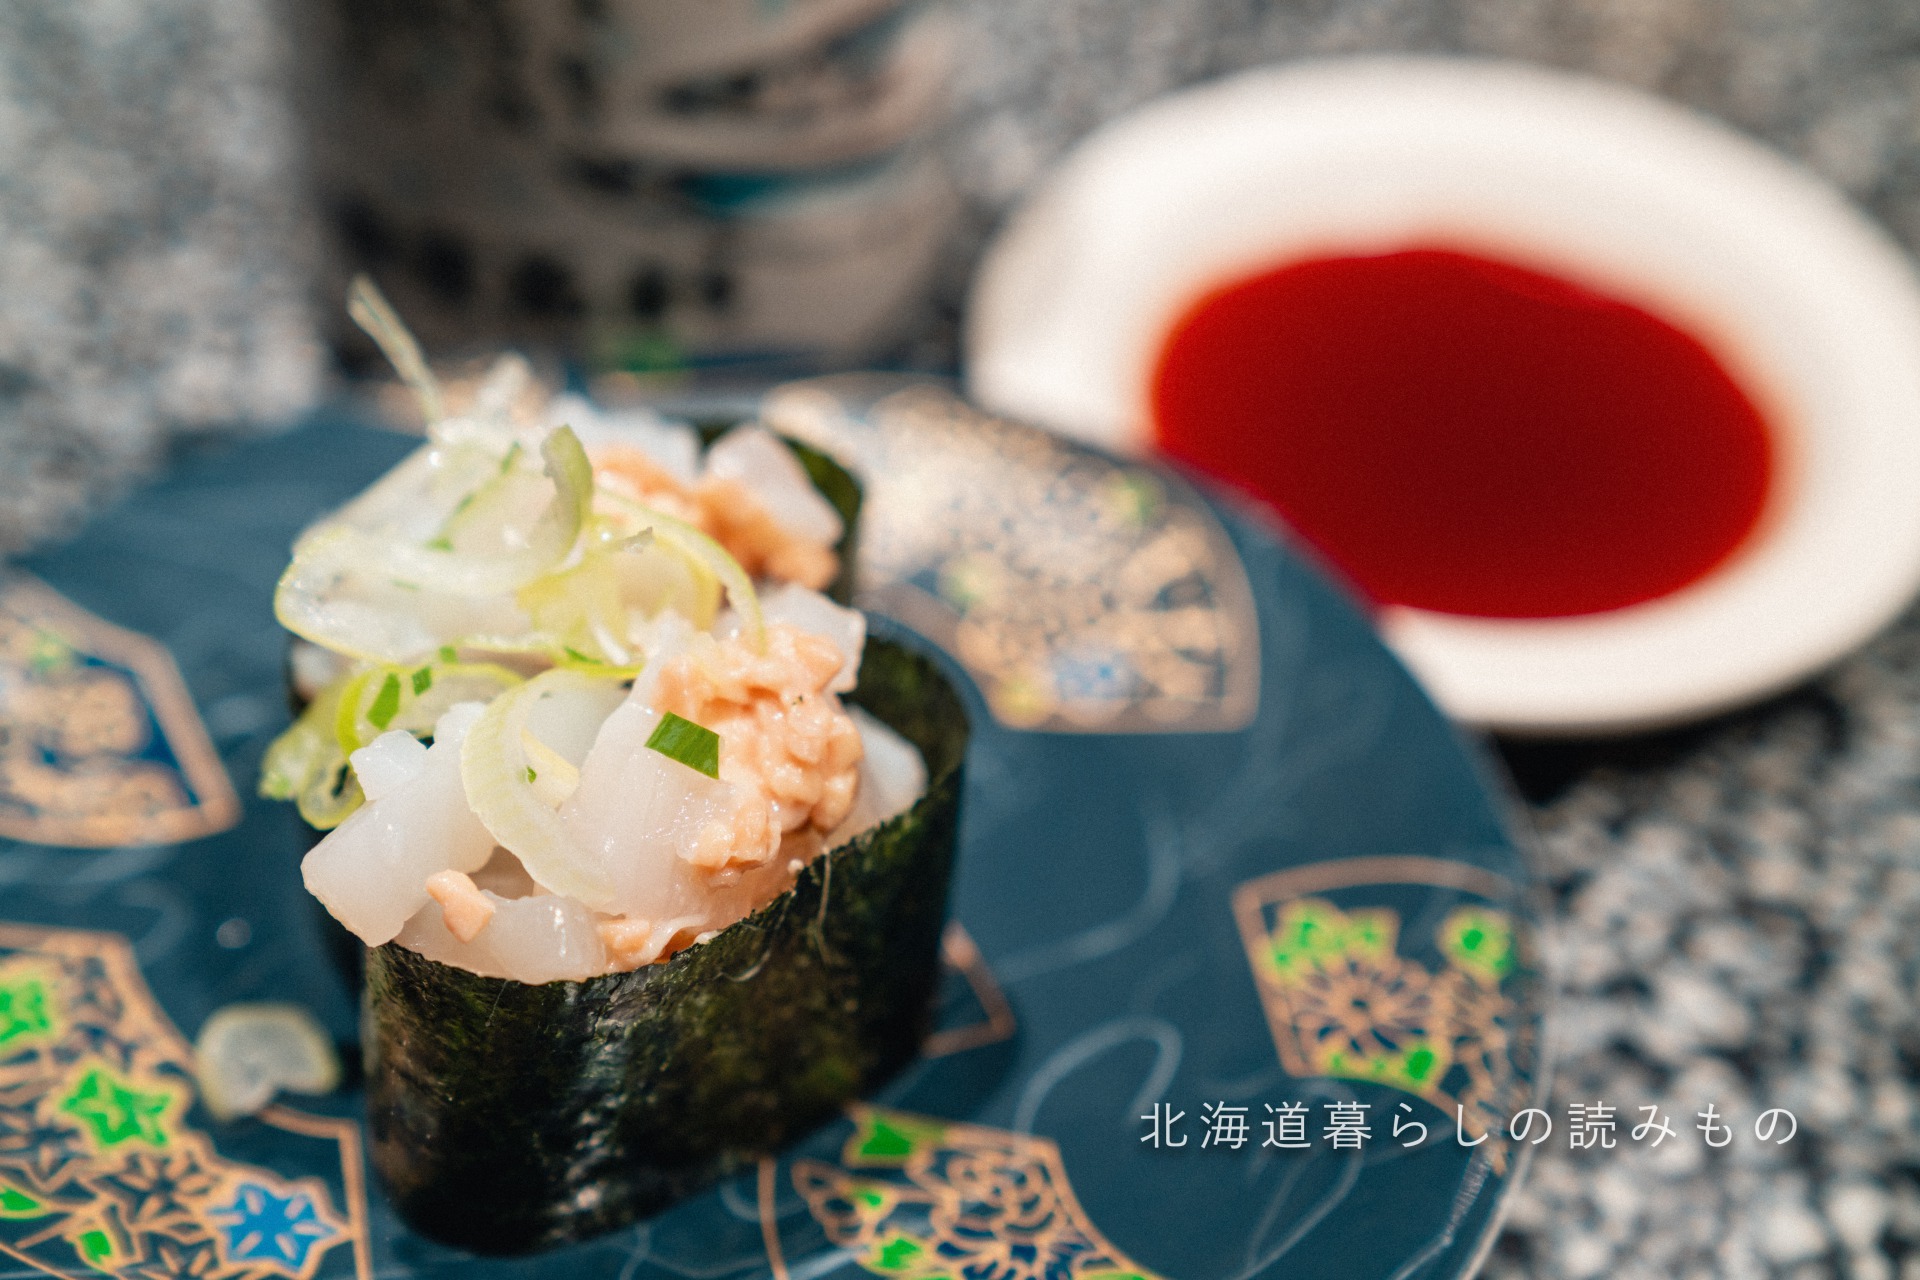 迴轉壽司根室花丸的菜單上的「墨魚納豆」